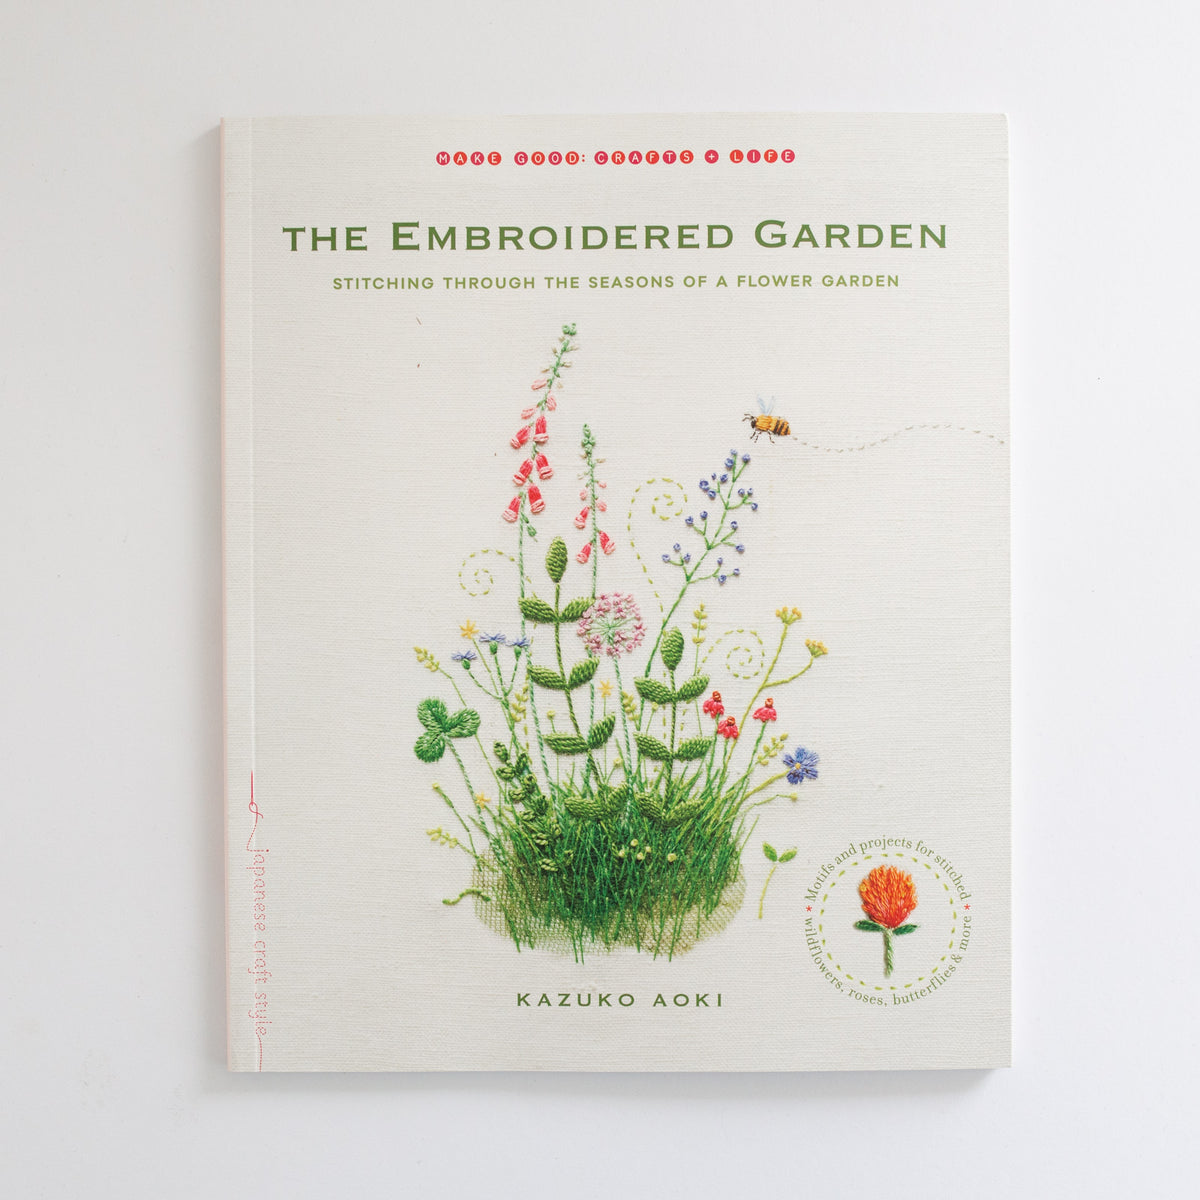 The Embroidered Garden' by Kazuko Aoki